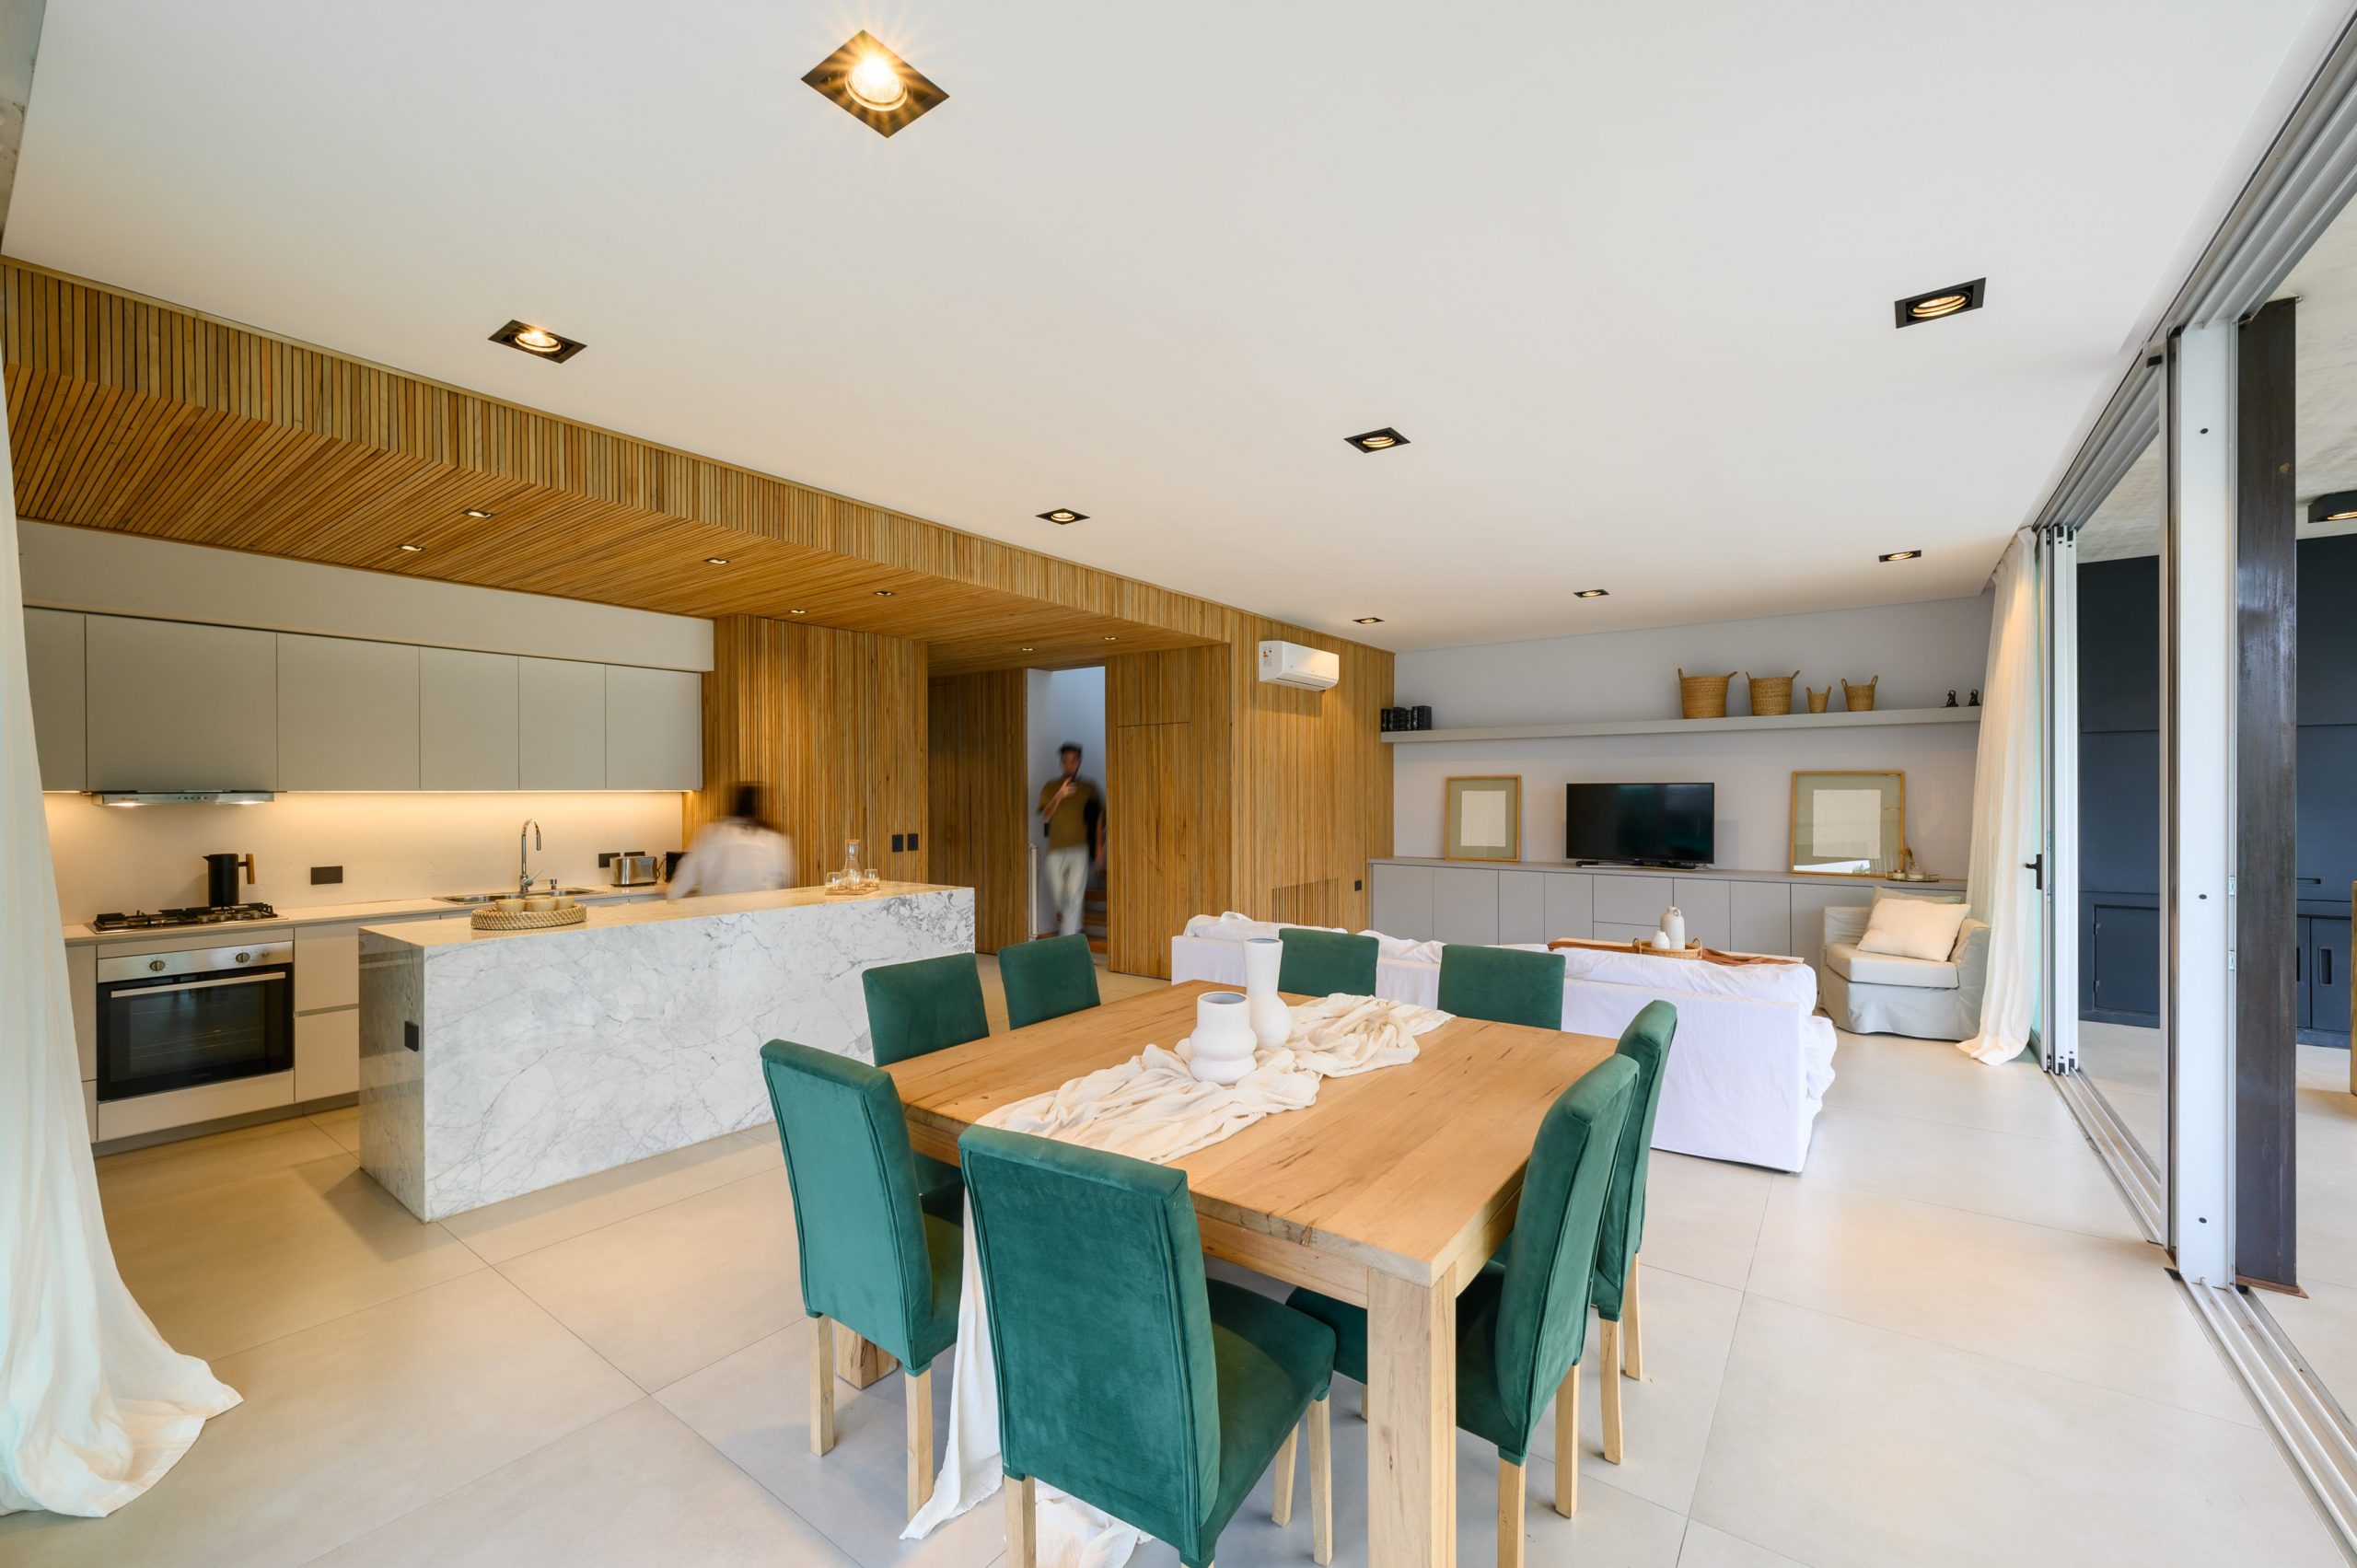 obývačka s kuchyňou s mramorovým kuchynským ostrovom